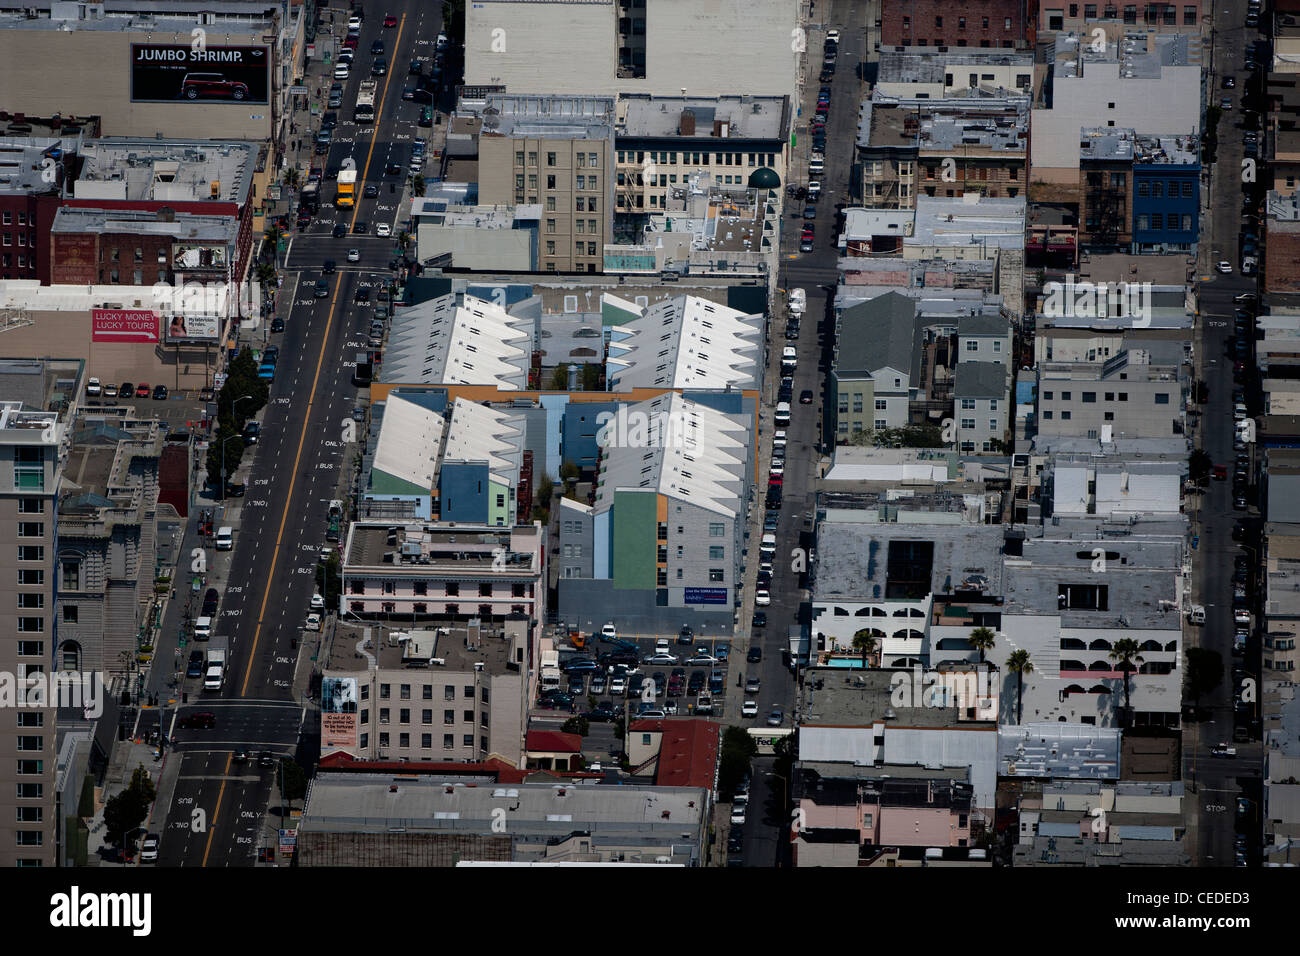 Photographie aérienne au sud de Market Street Mission SOMA San Francisco, Californie Banque D'Images